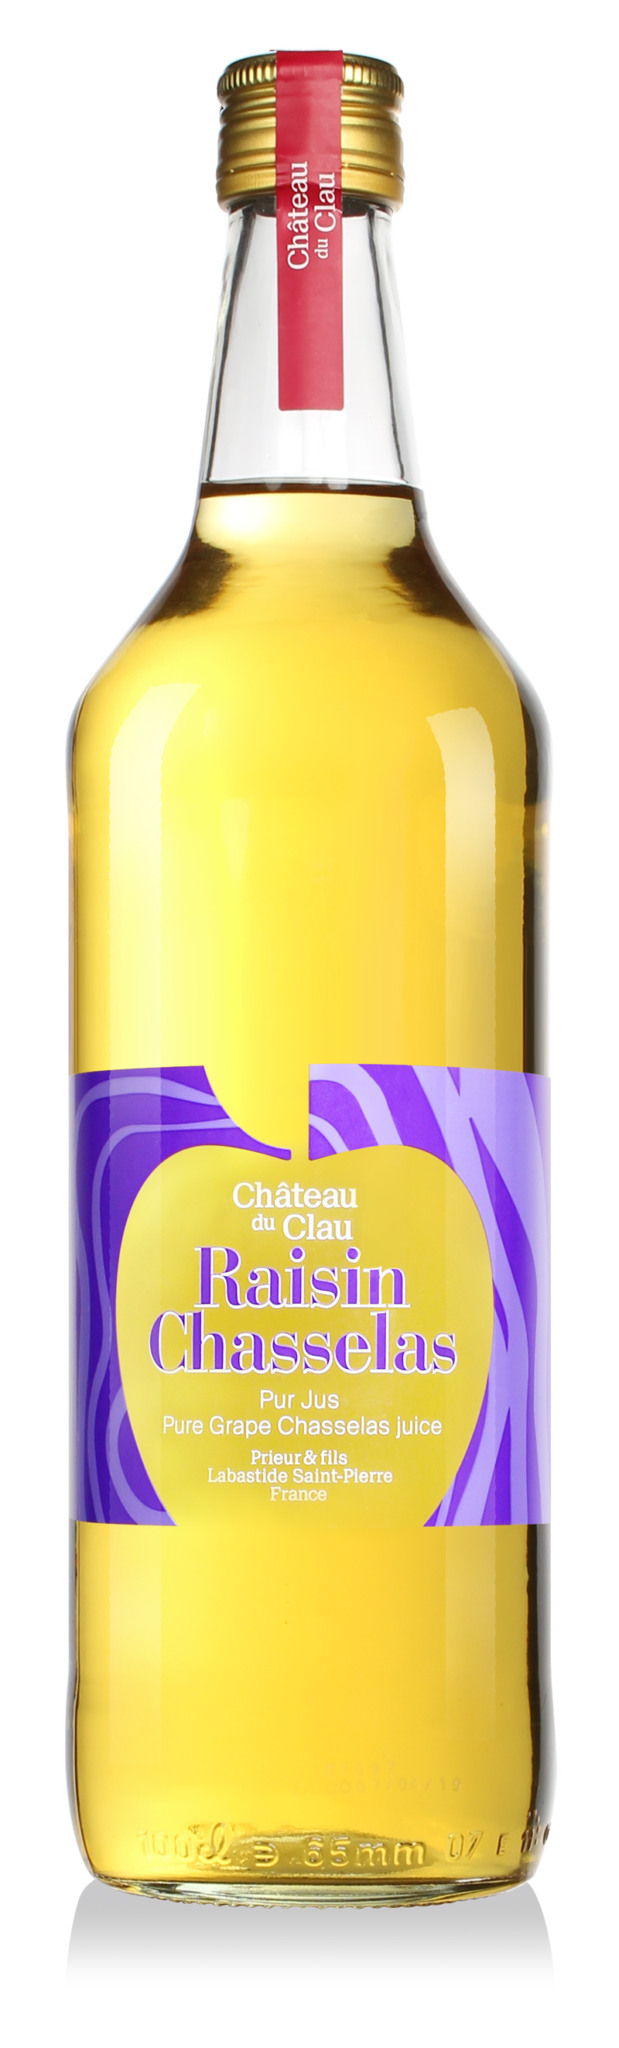 Pure Juice Chasselas Grape premium natural fruit juice Chateau du Clau